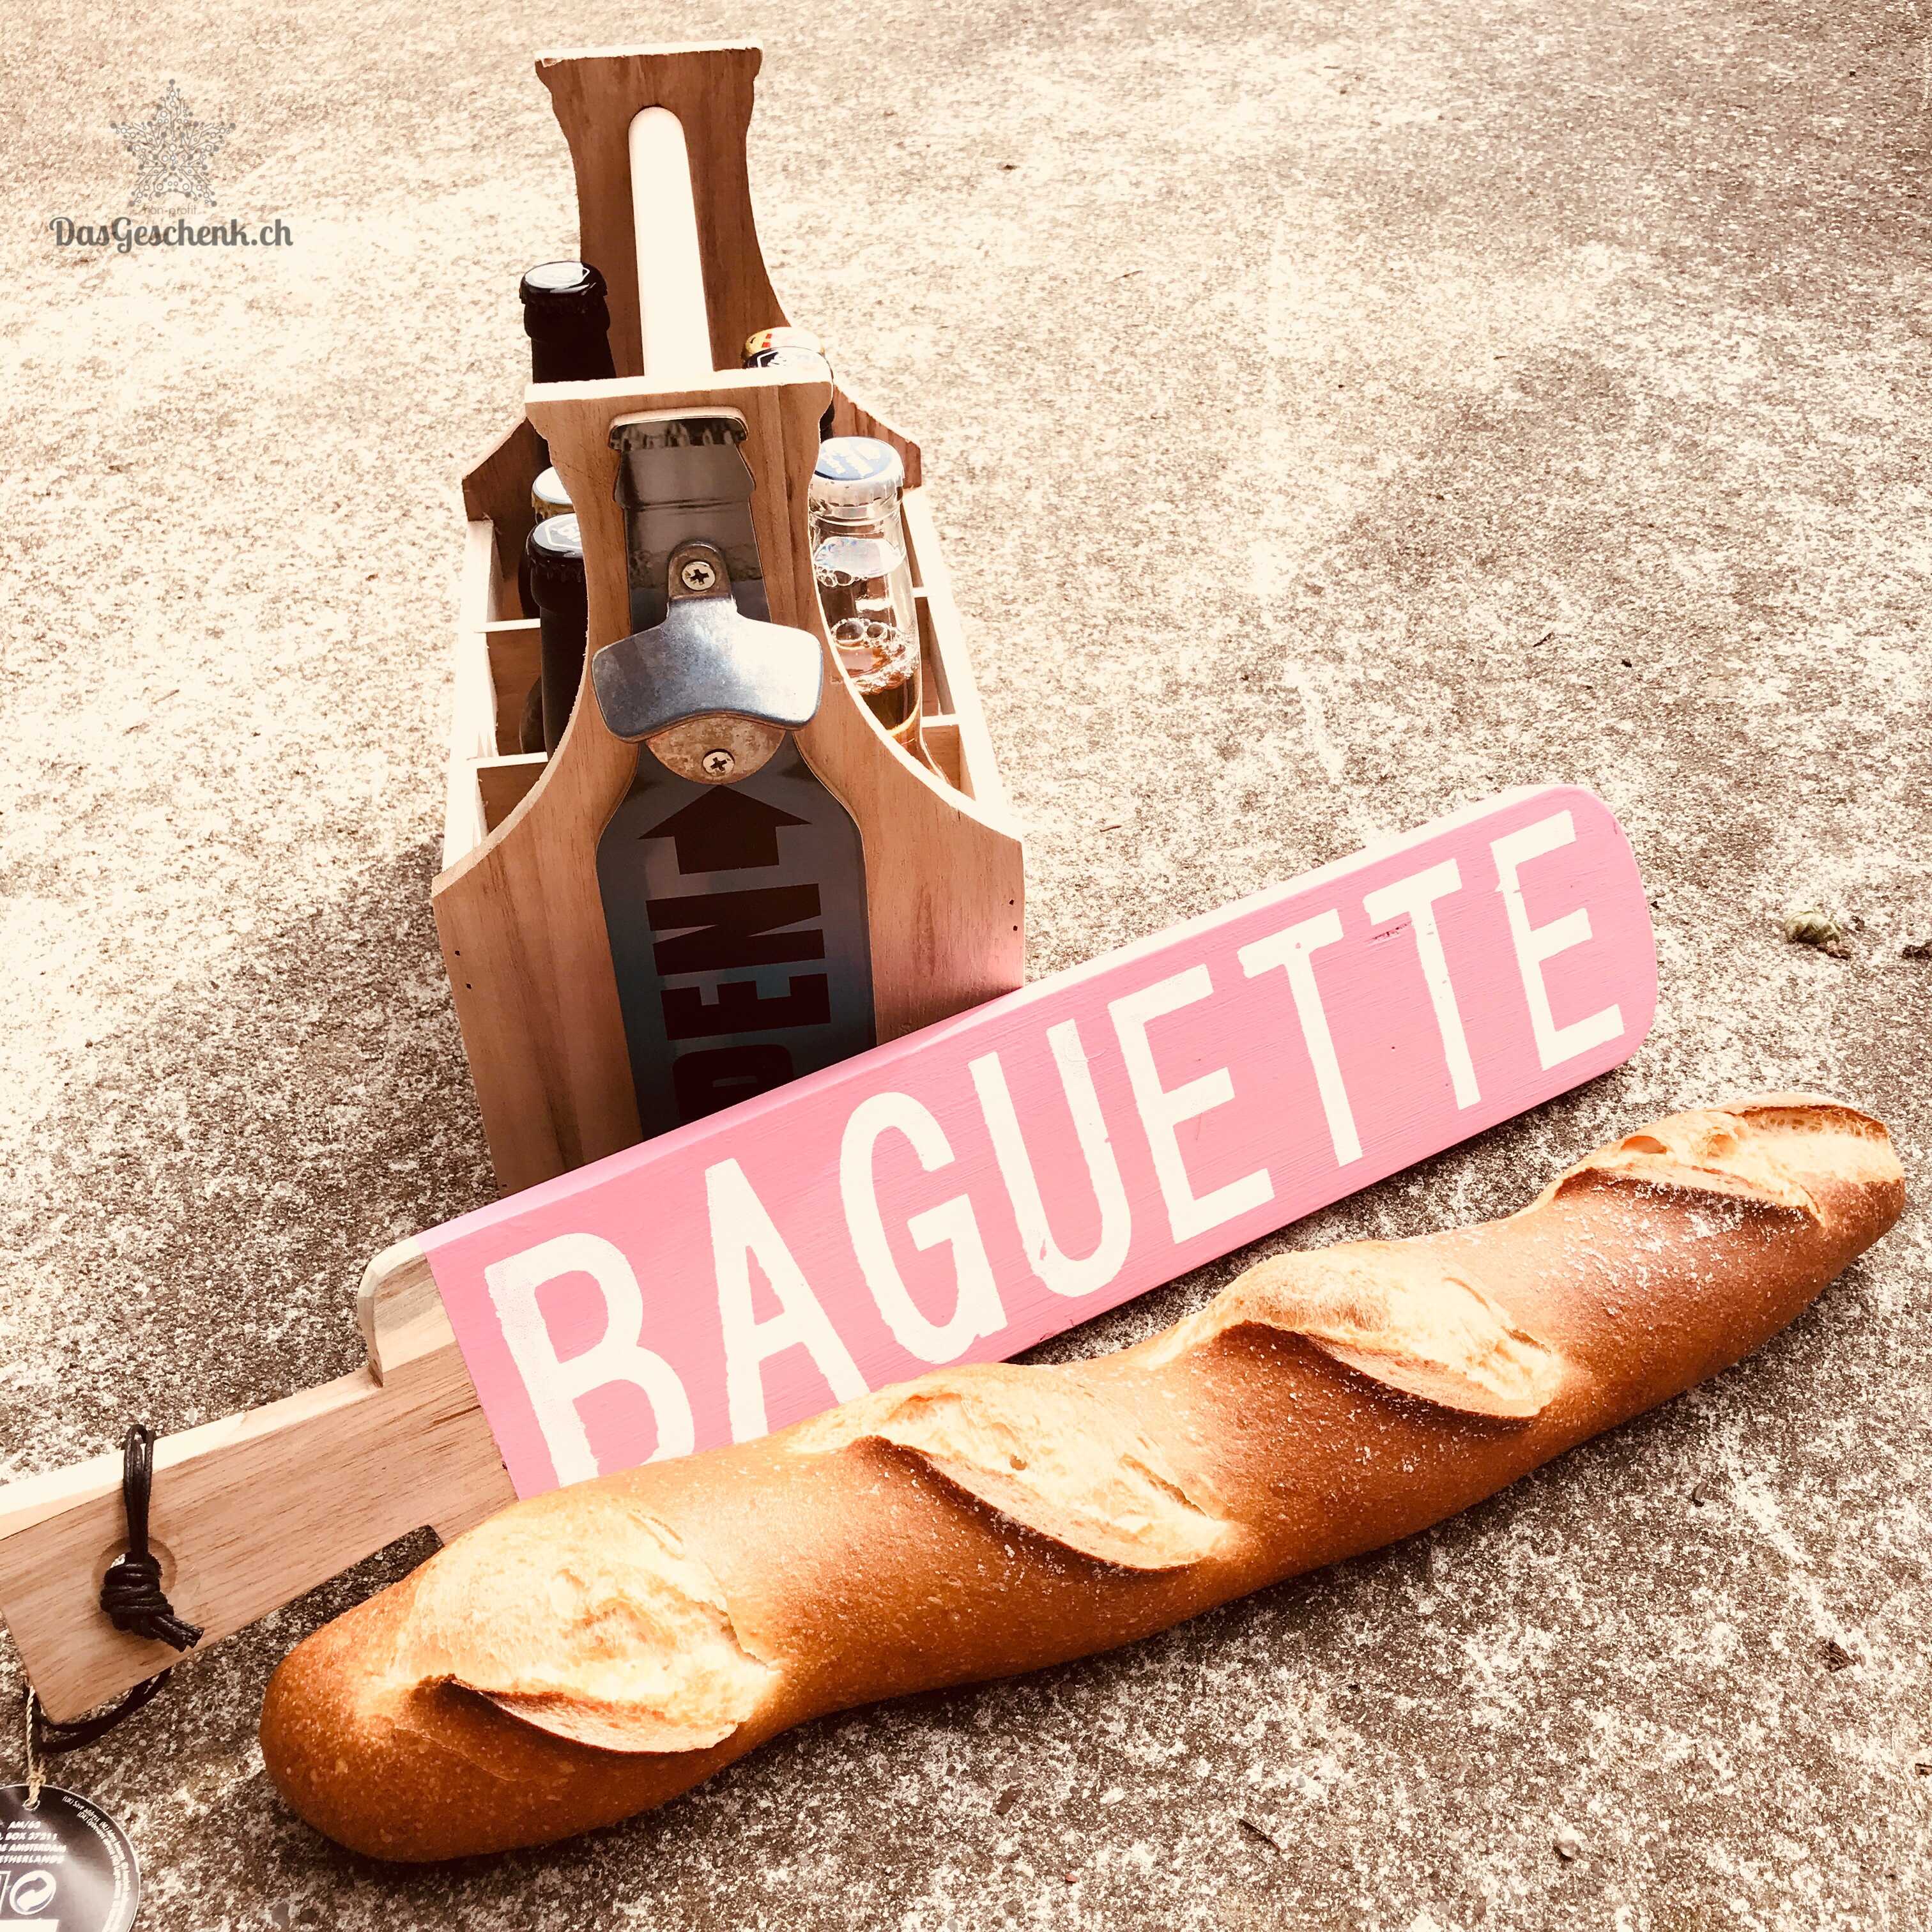 Vintage Brotschneidebrett "Baguette"